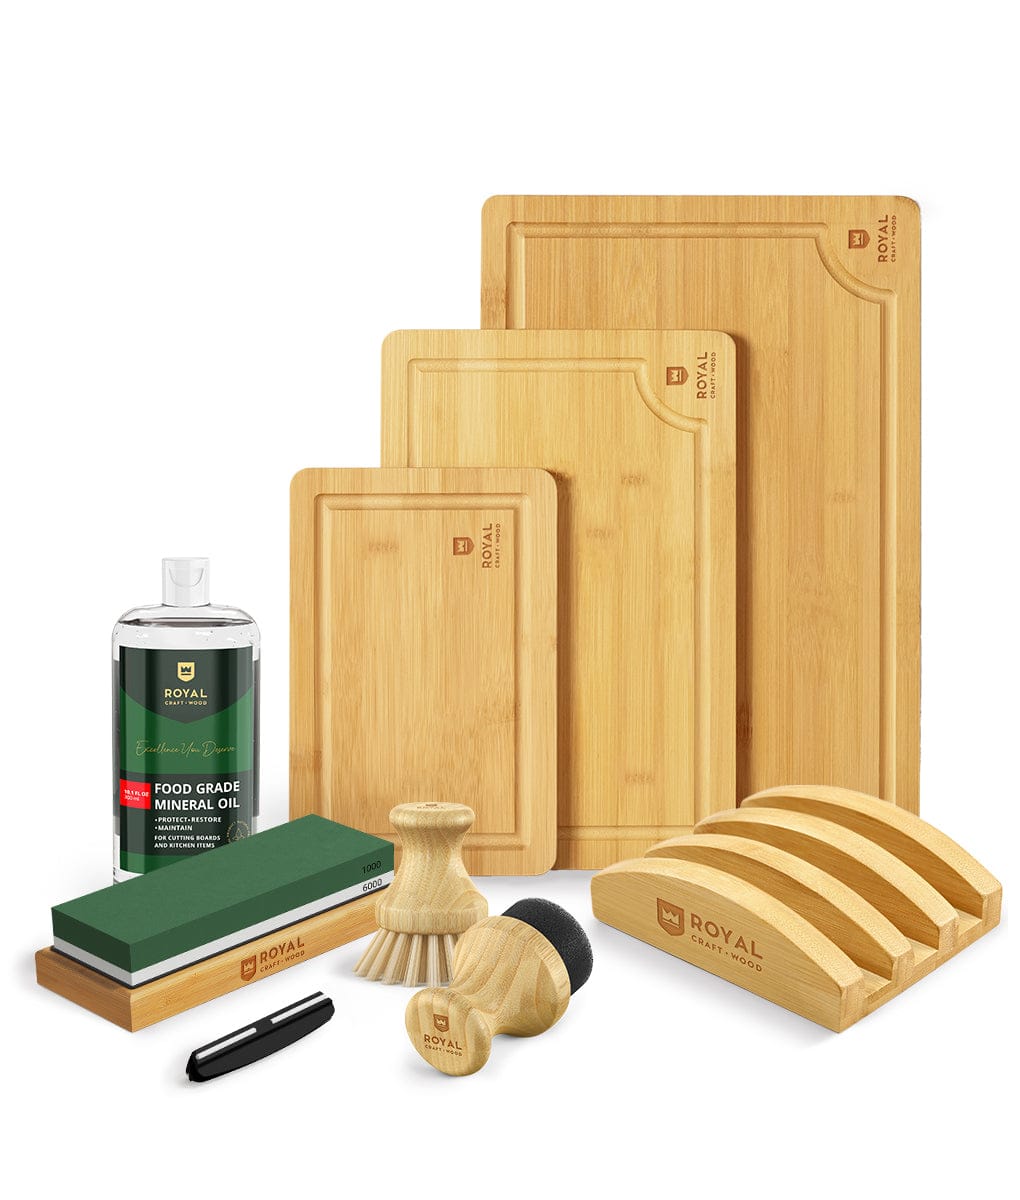 Royal Craft Wood Bamboo Cutting Board for Kitchen - Cutting Board